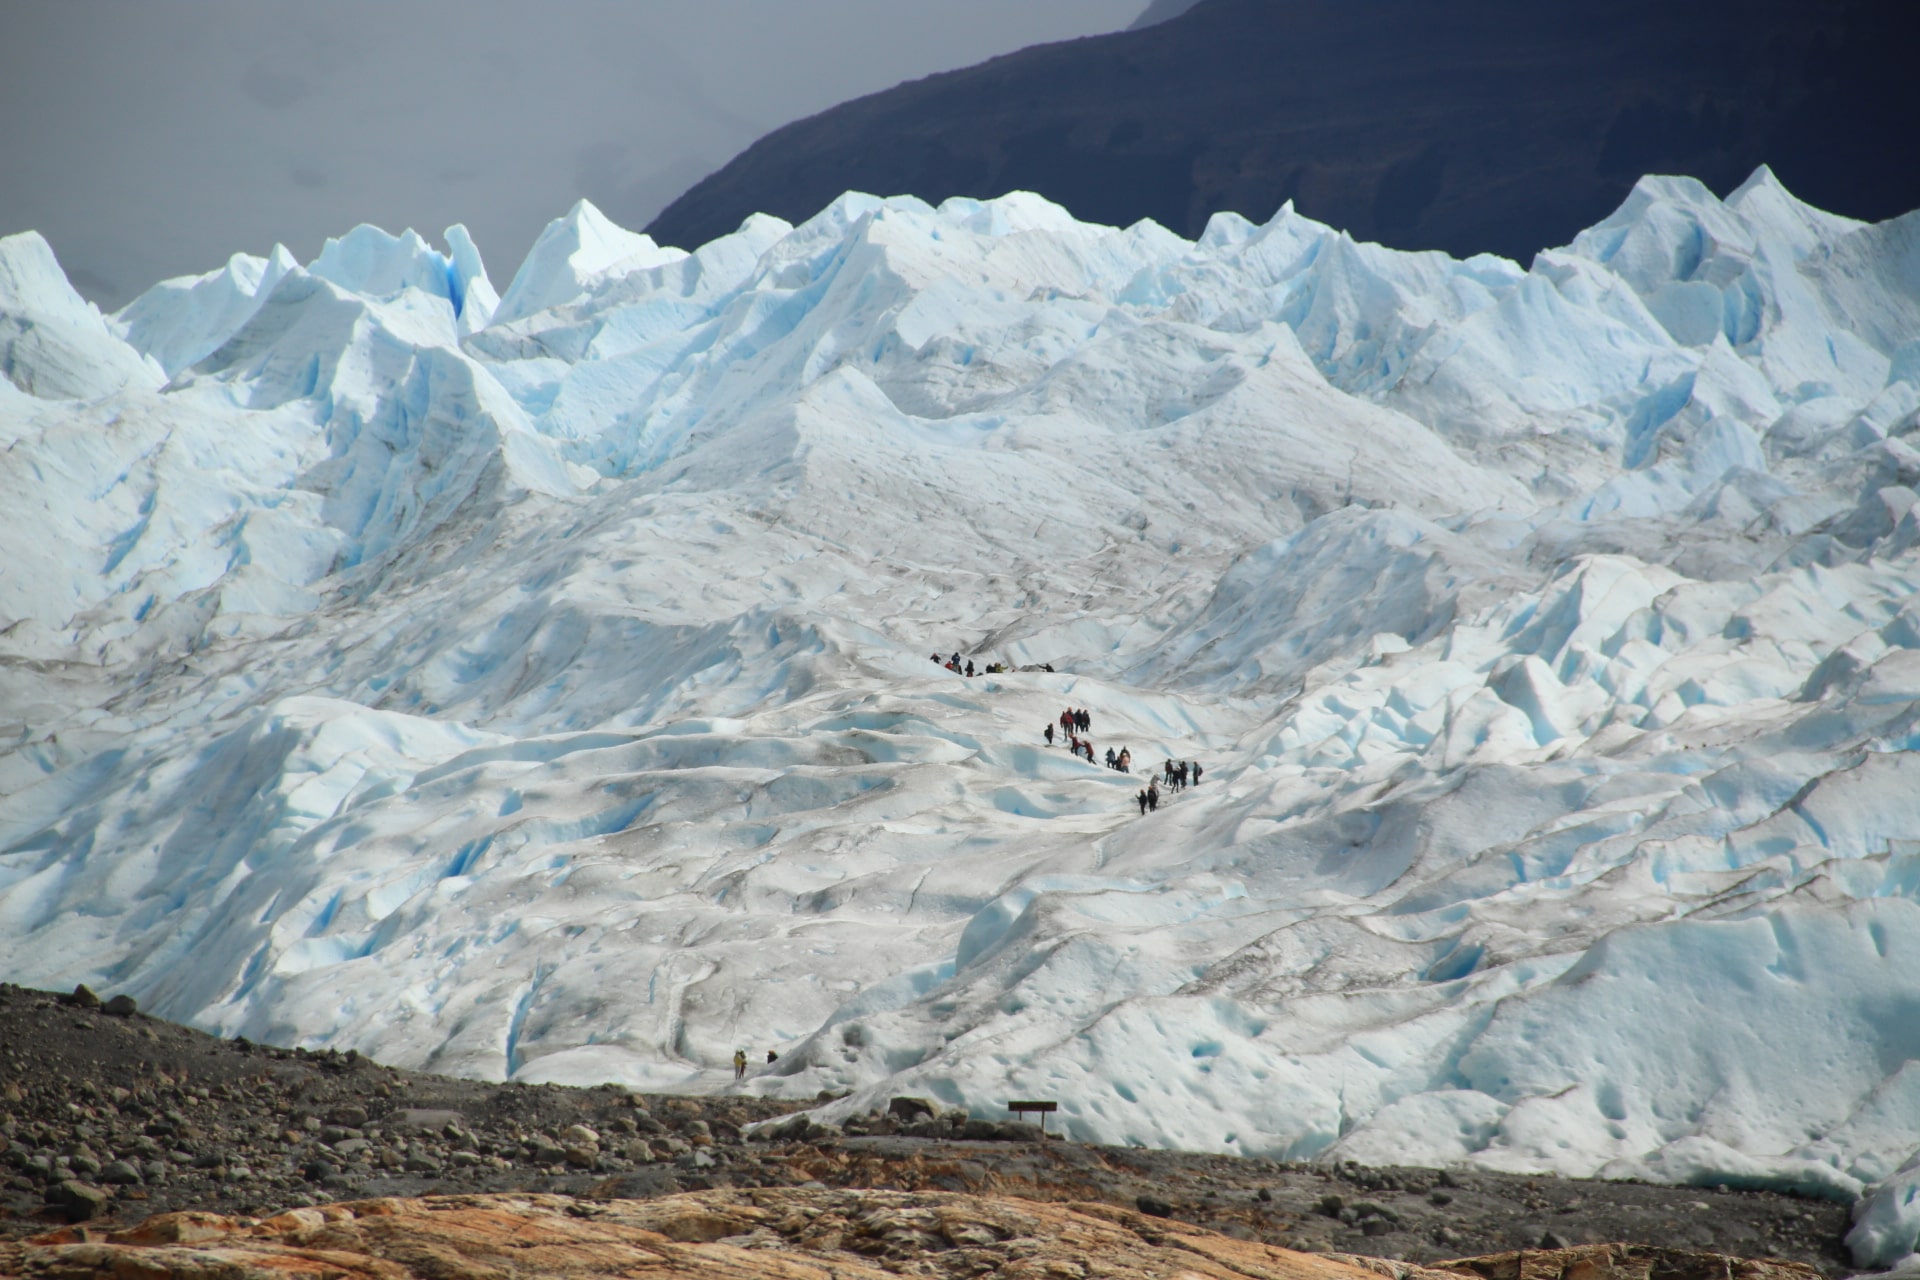 People hiking in Perito Moreno glacier